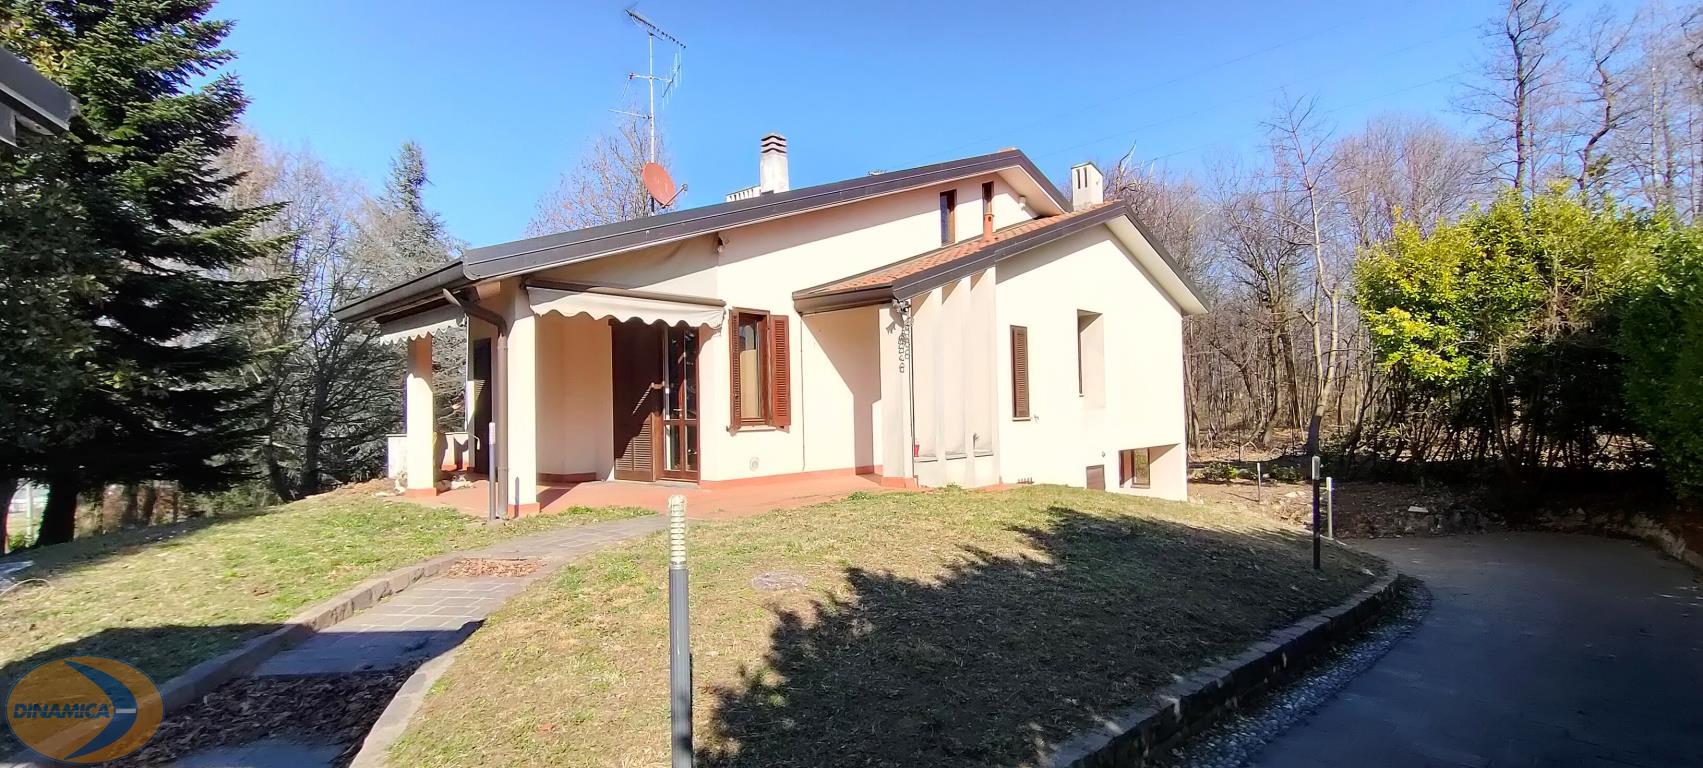 Villa in vendita a Barzago - Zona: Residenziale